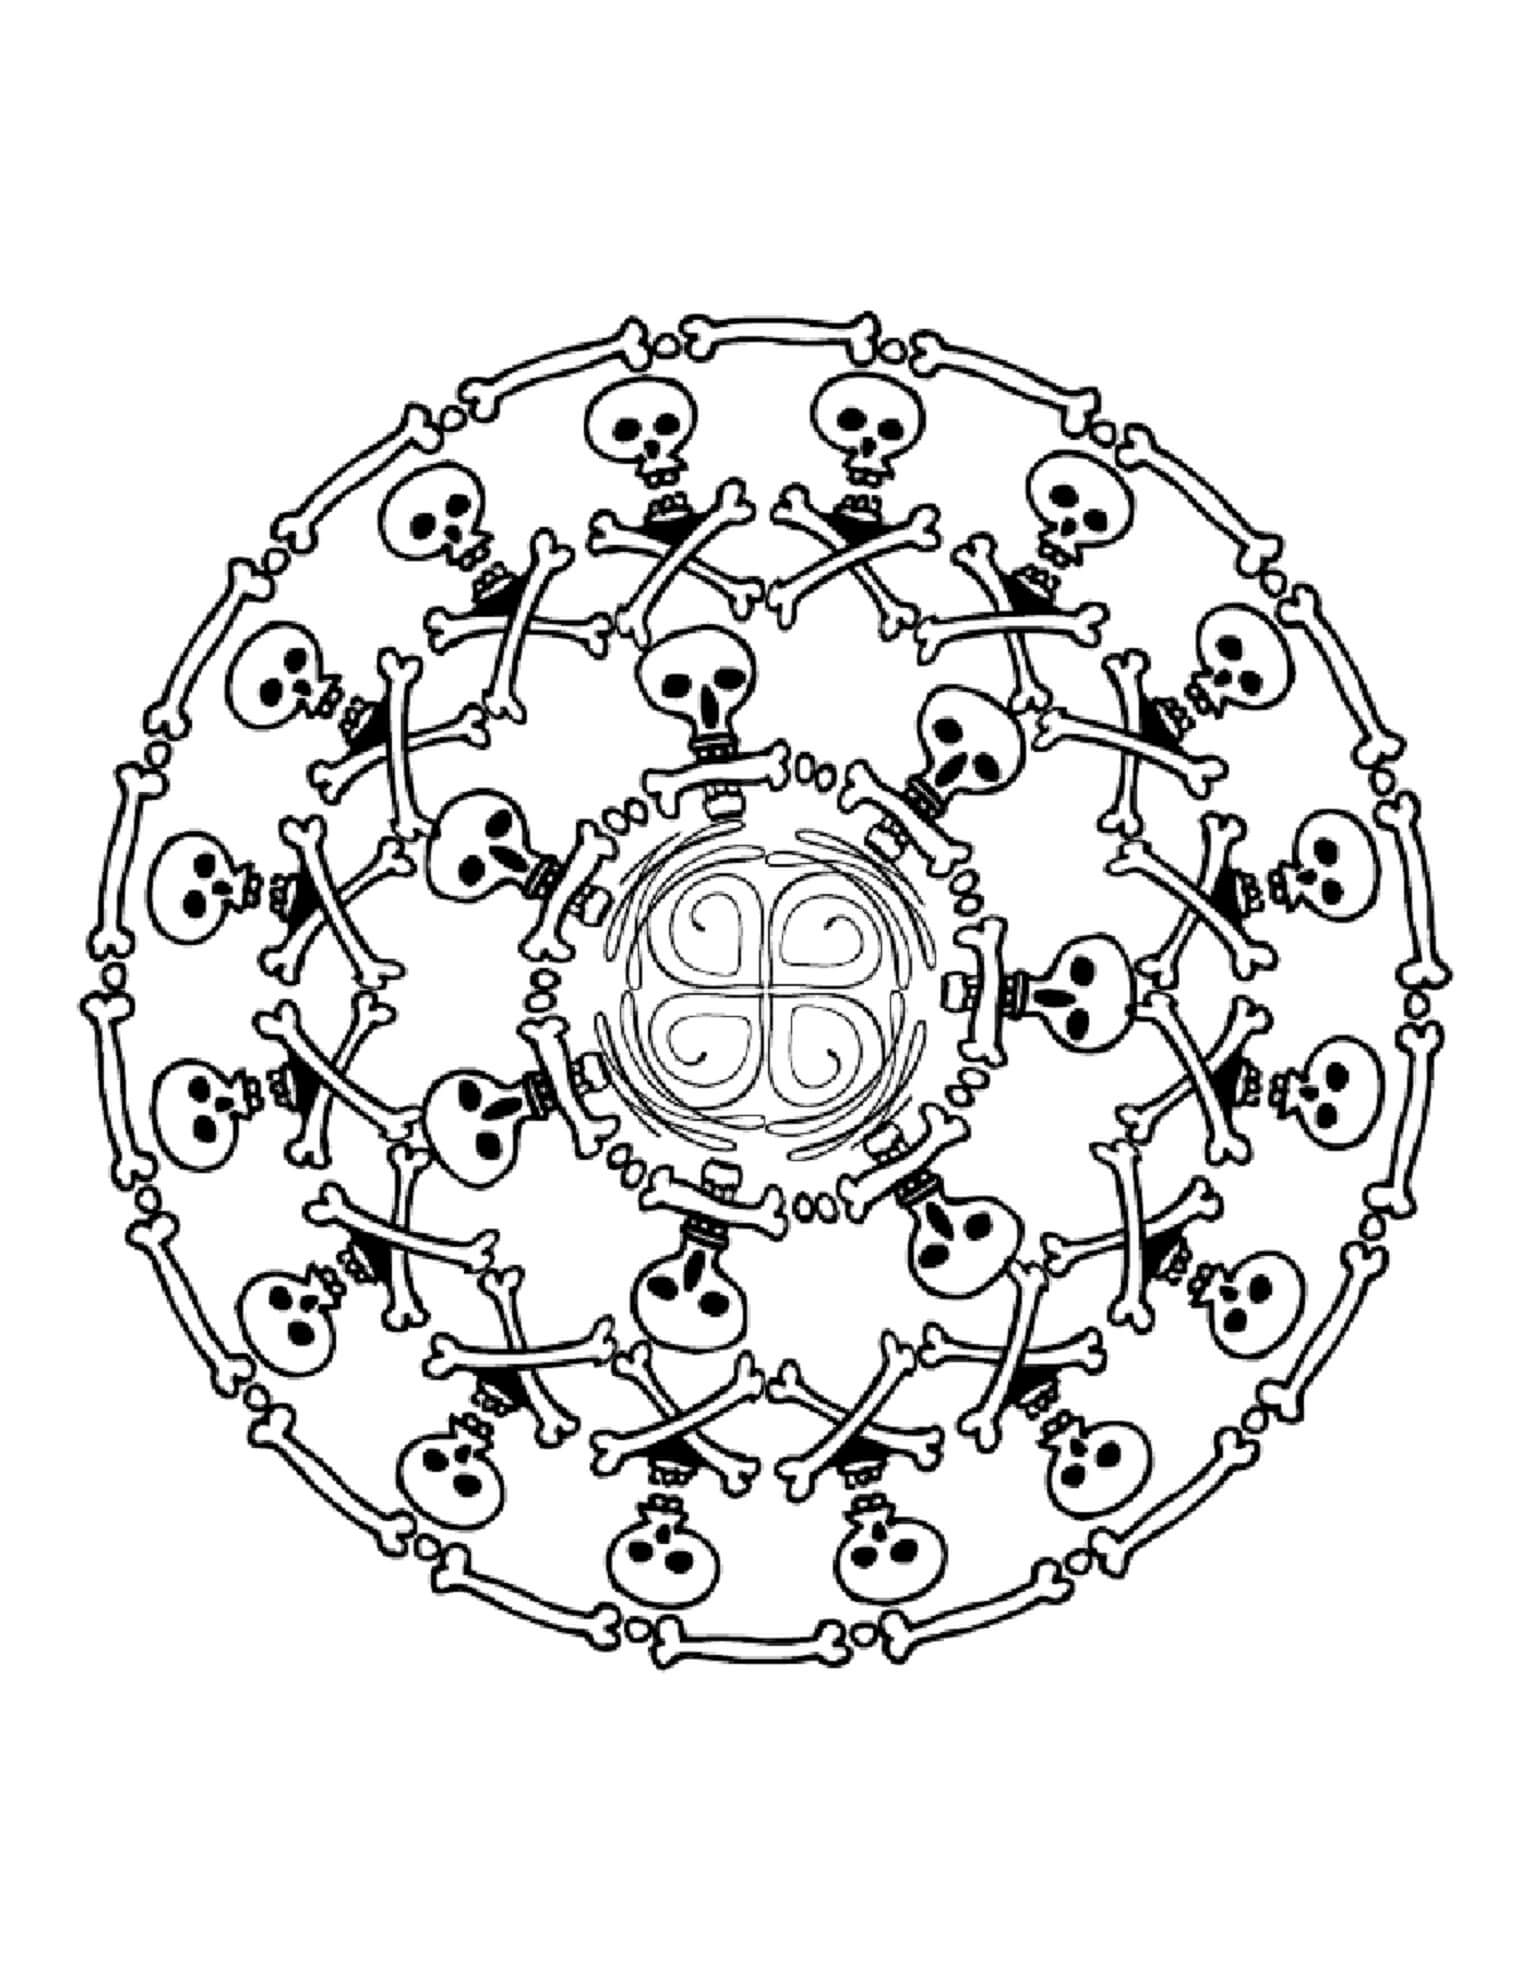 Skulls and Bones in Halloween Mandala coloring page - Download, Print ...